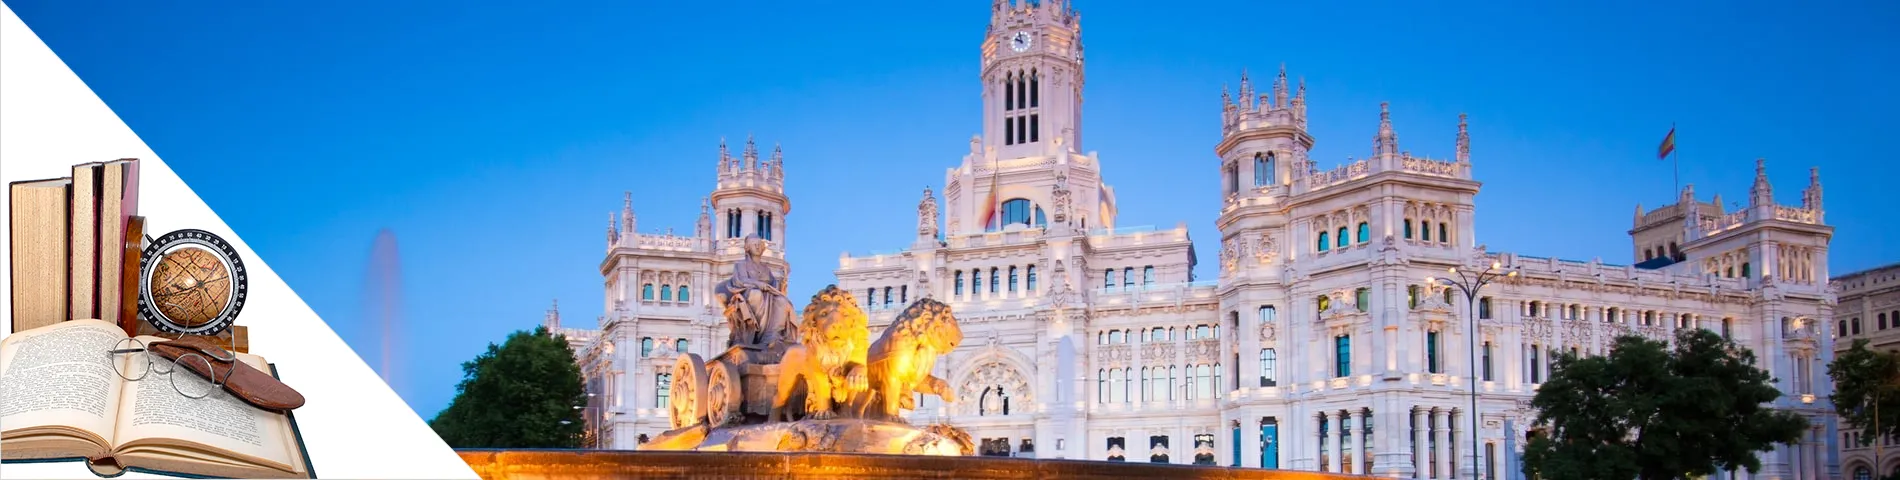 Madrid - Spagnolo & Letteratura